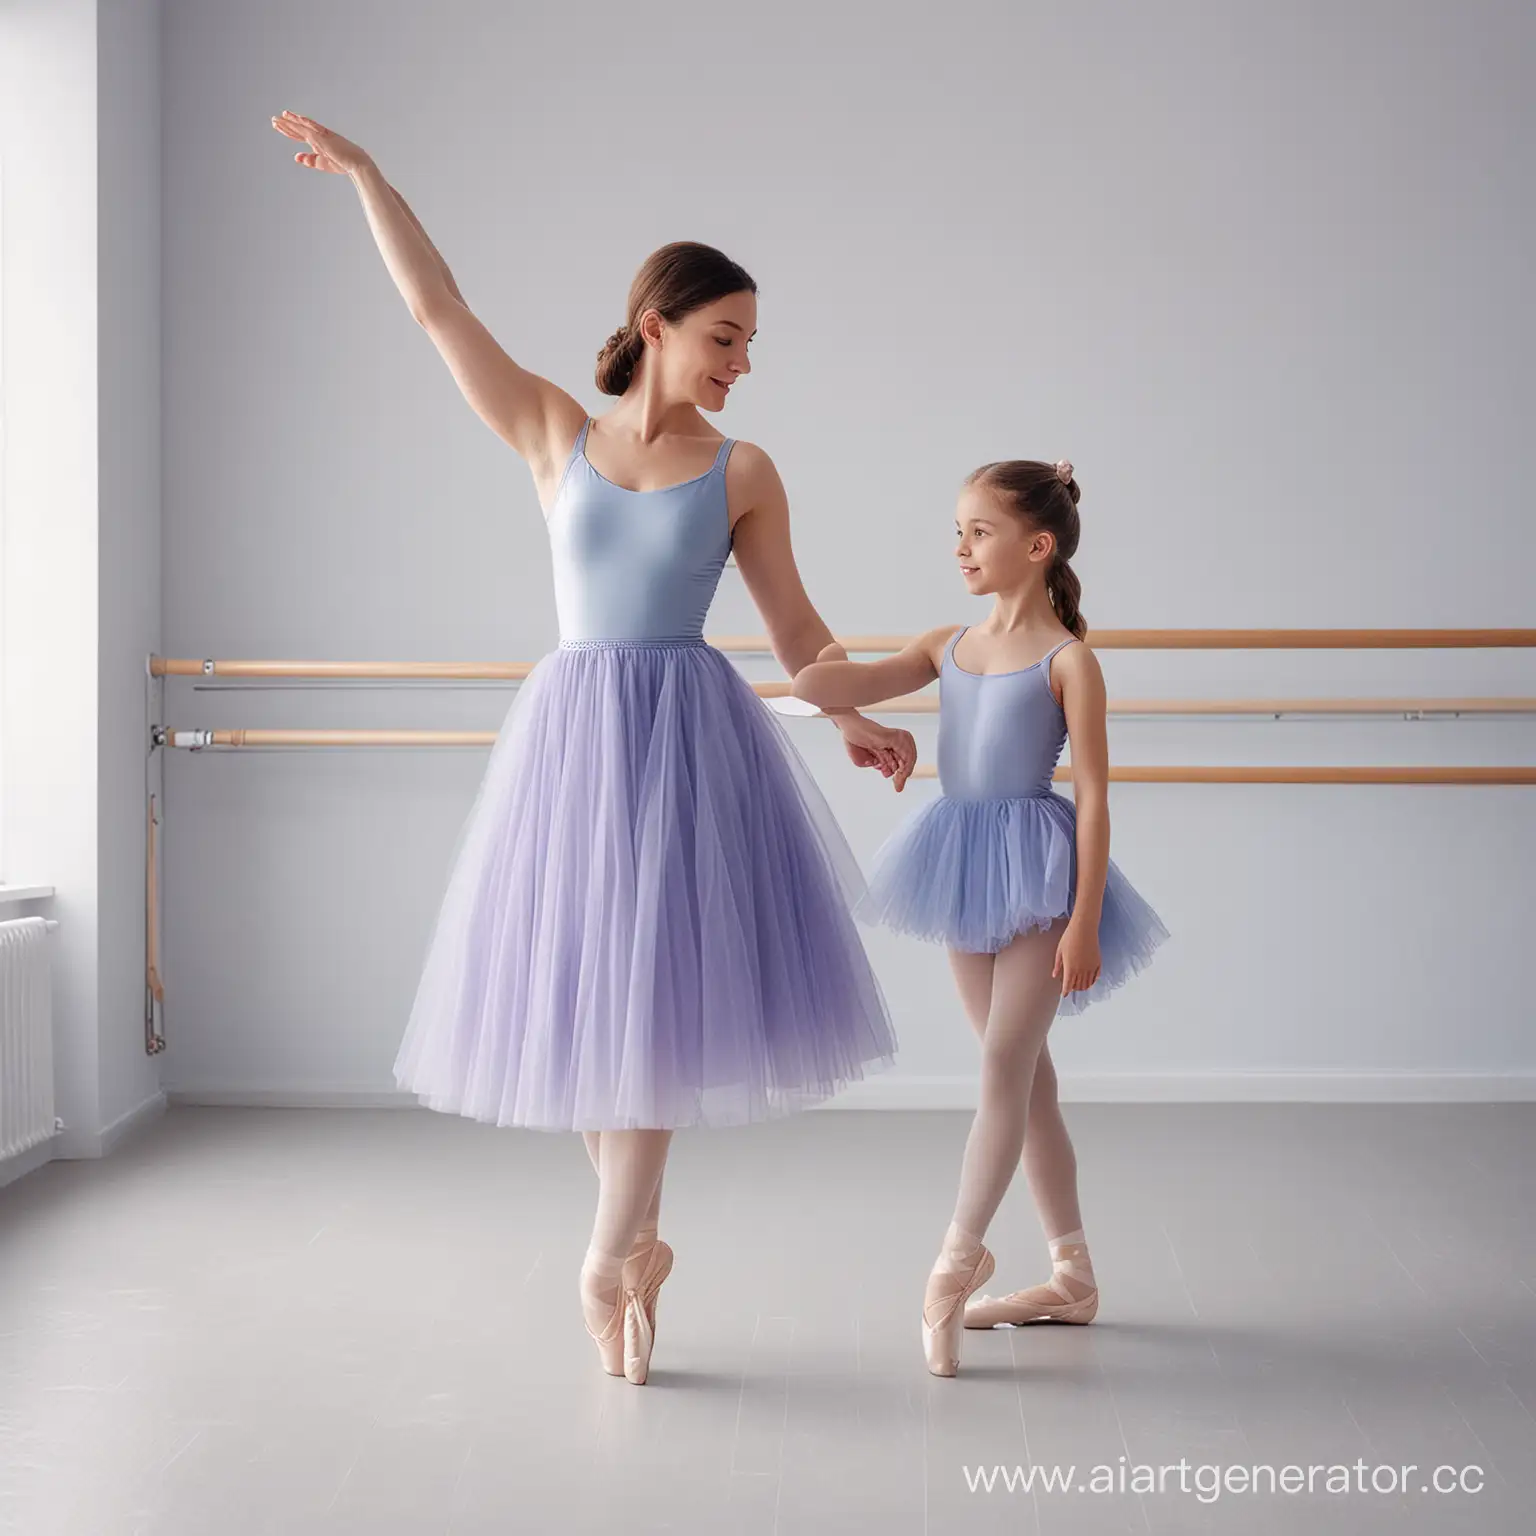 В новой балетной студии, учатся танцевать мама с дочкой. На них надета пачка в нежном градиенте сине-фиолетовых оттенках